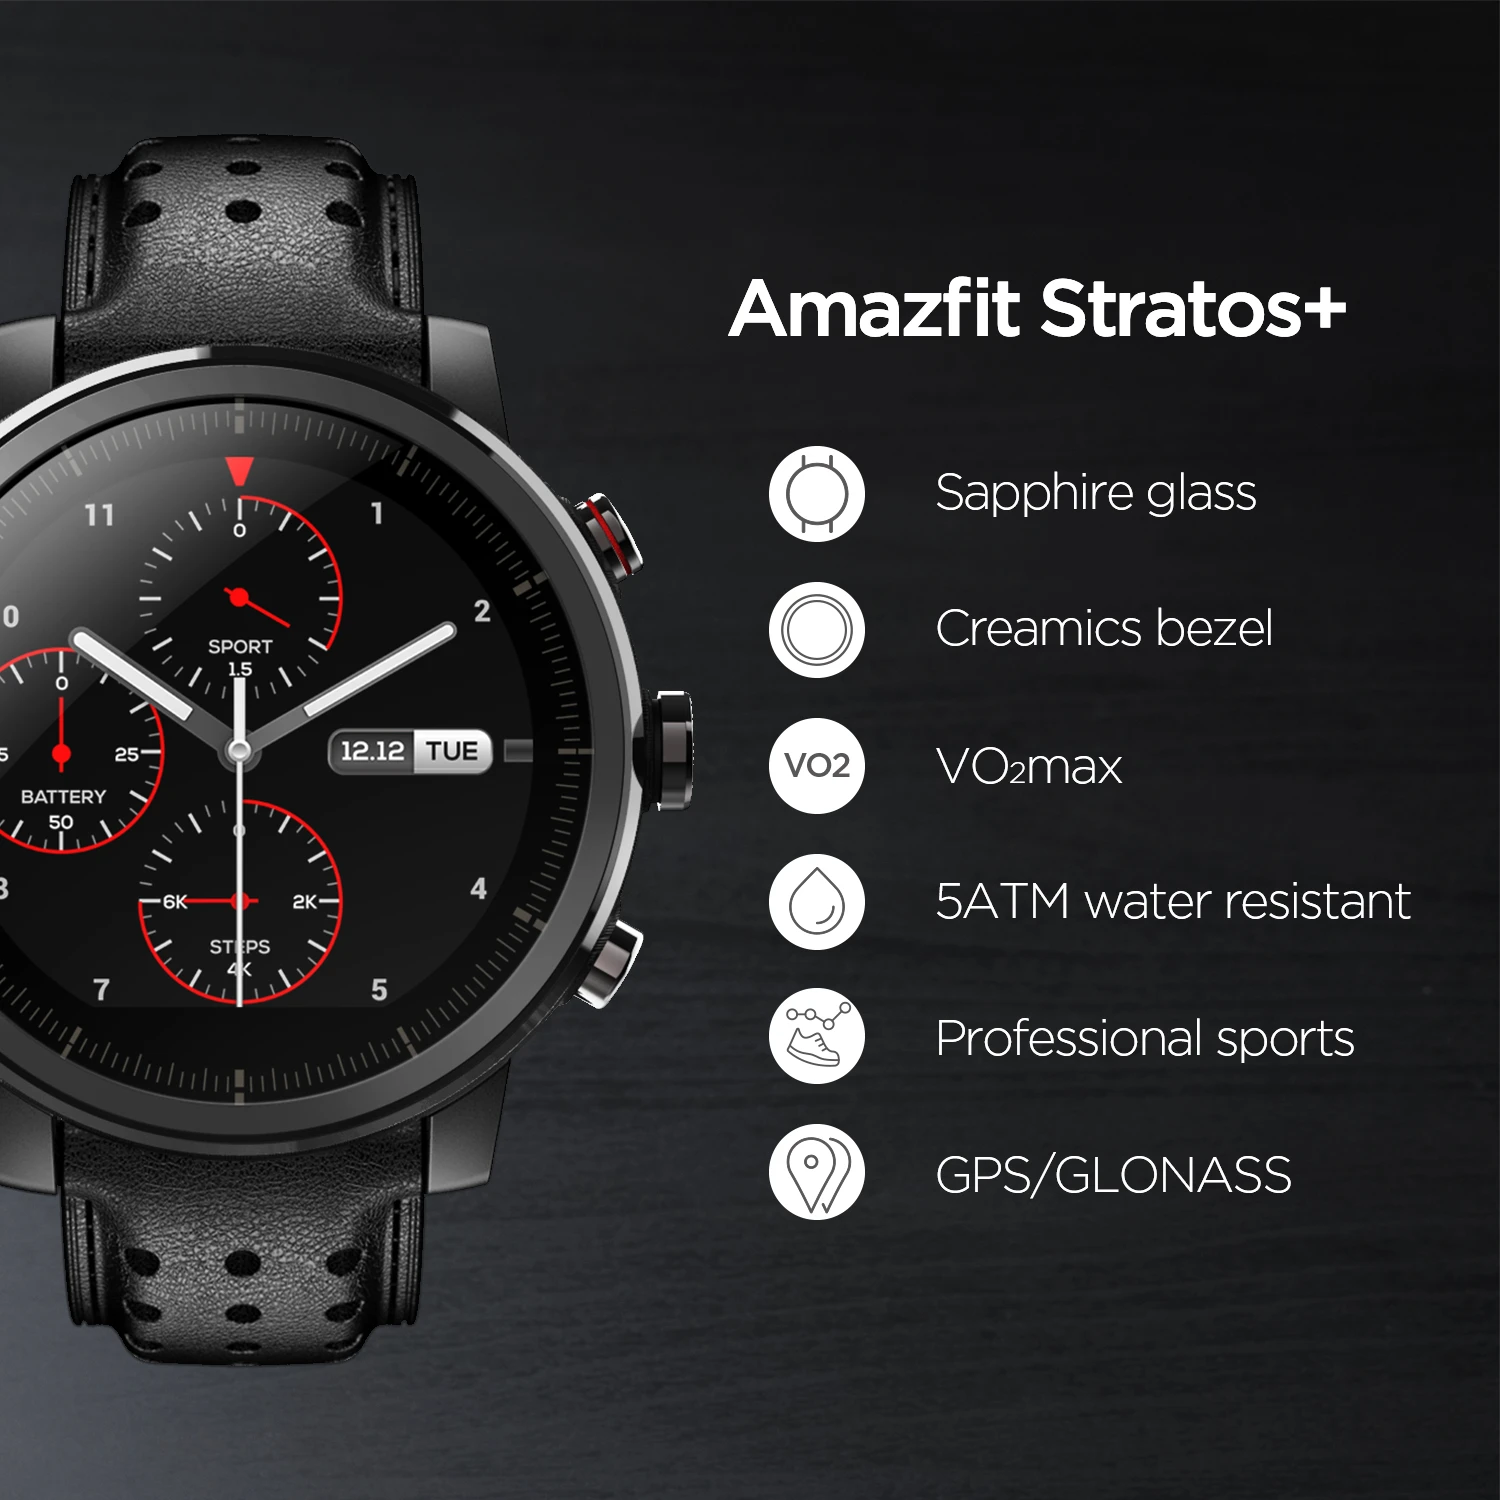 granja Envolver mostrador Amazfit reloj inteligente Stratos +, dispositivo profesional con correa de  cuero genuino, caja de regalo Sapphire 2S e iOS para teléfonos Android,  novedad de 2019|Relojes inteligentes| - AliExpress